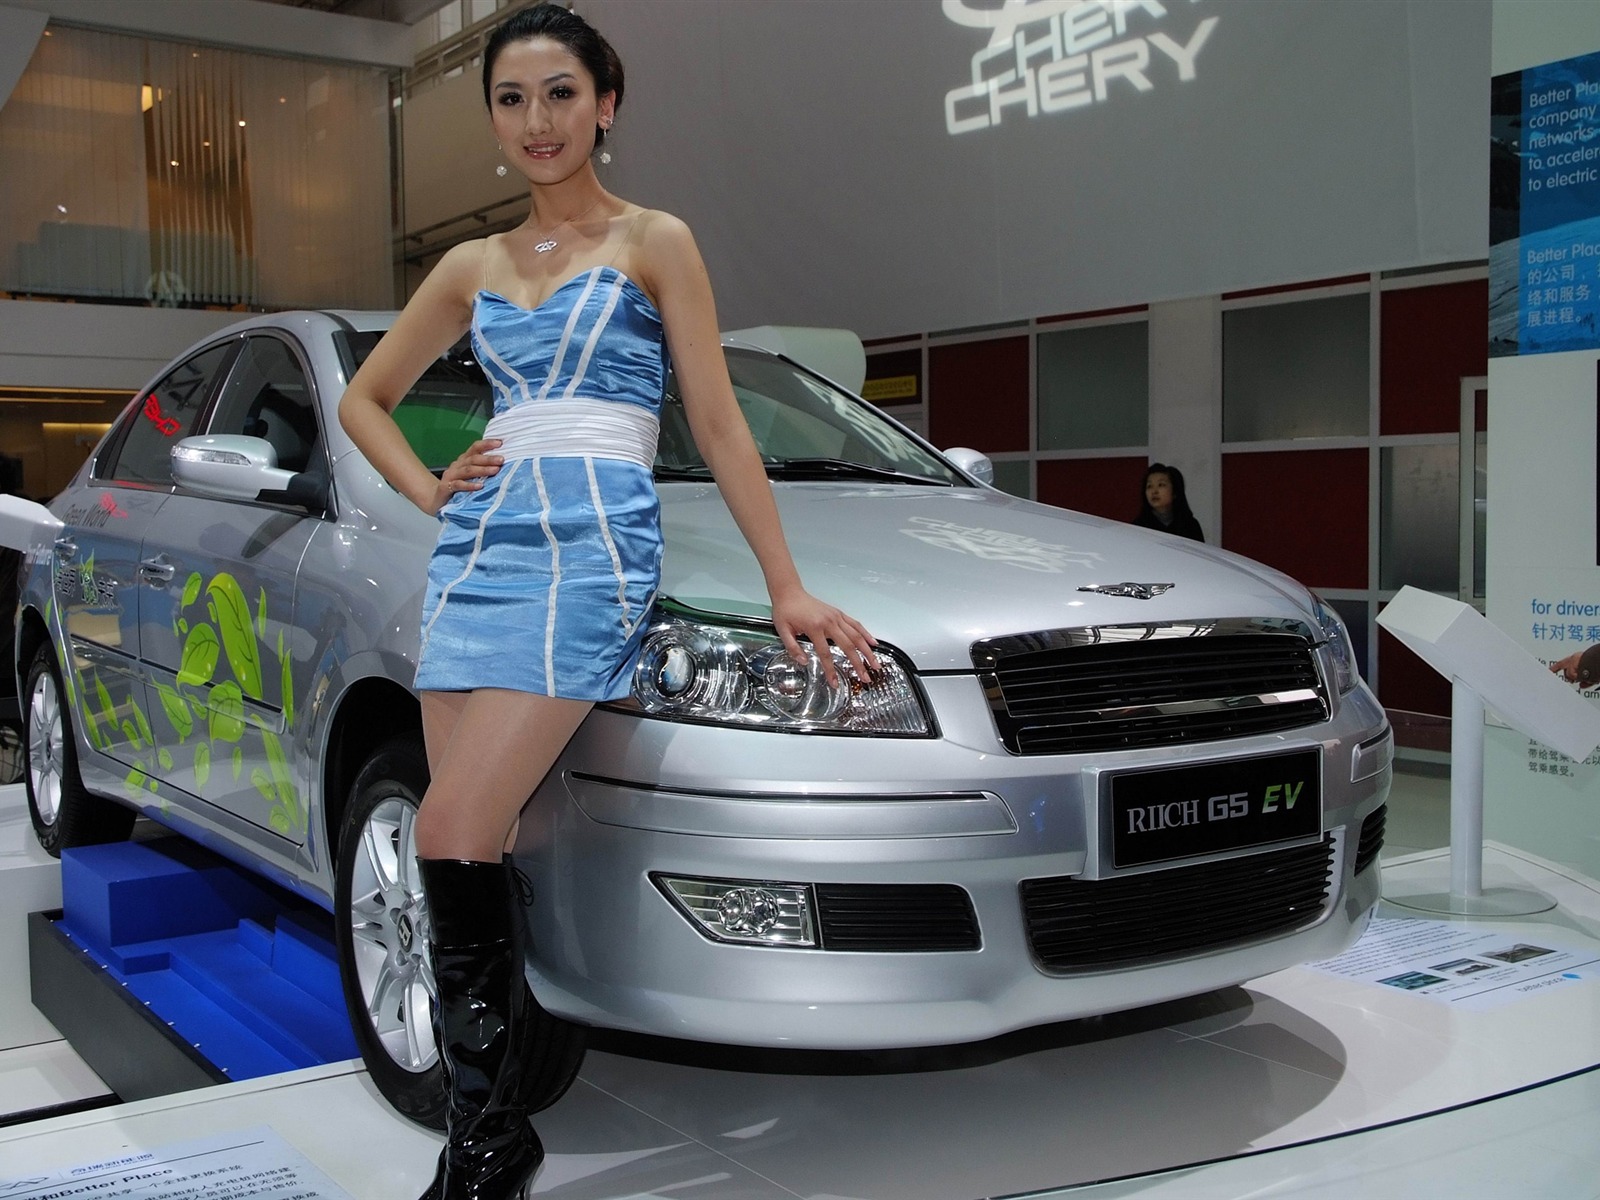 2010北京国际车展 香车美女 (螺纹钢作品)21 - 1600x1200